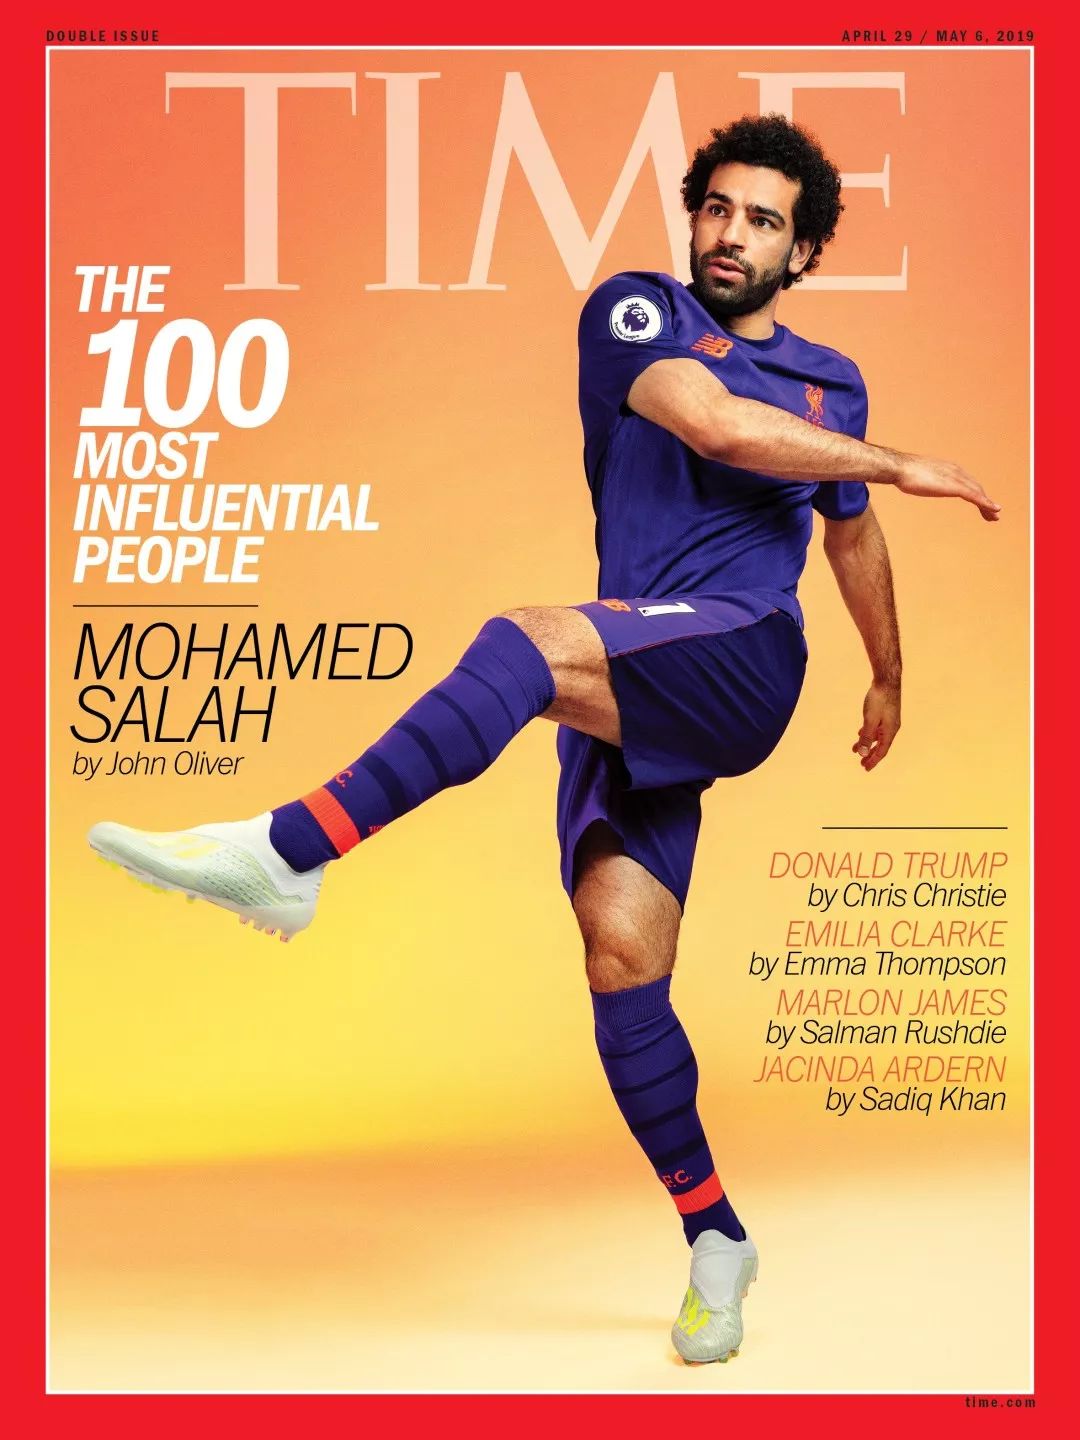 萨拉赫荣登时代杂志封面(登上《时代周刊》的萨拉赫，会是未来的埃及总统吗？)